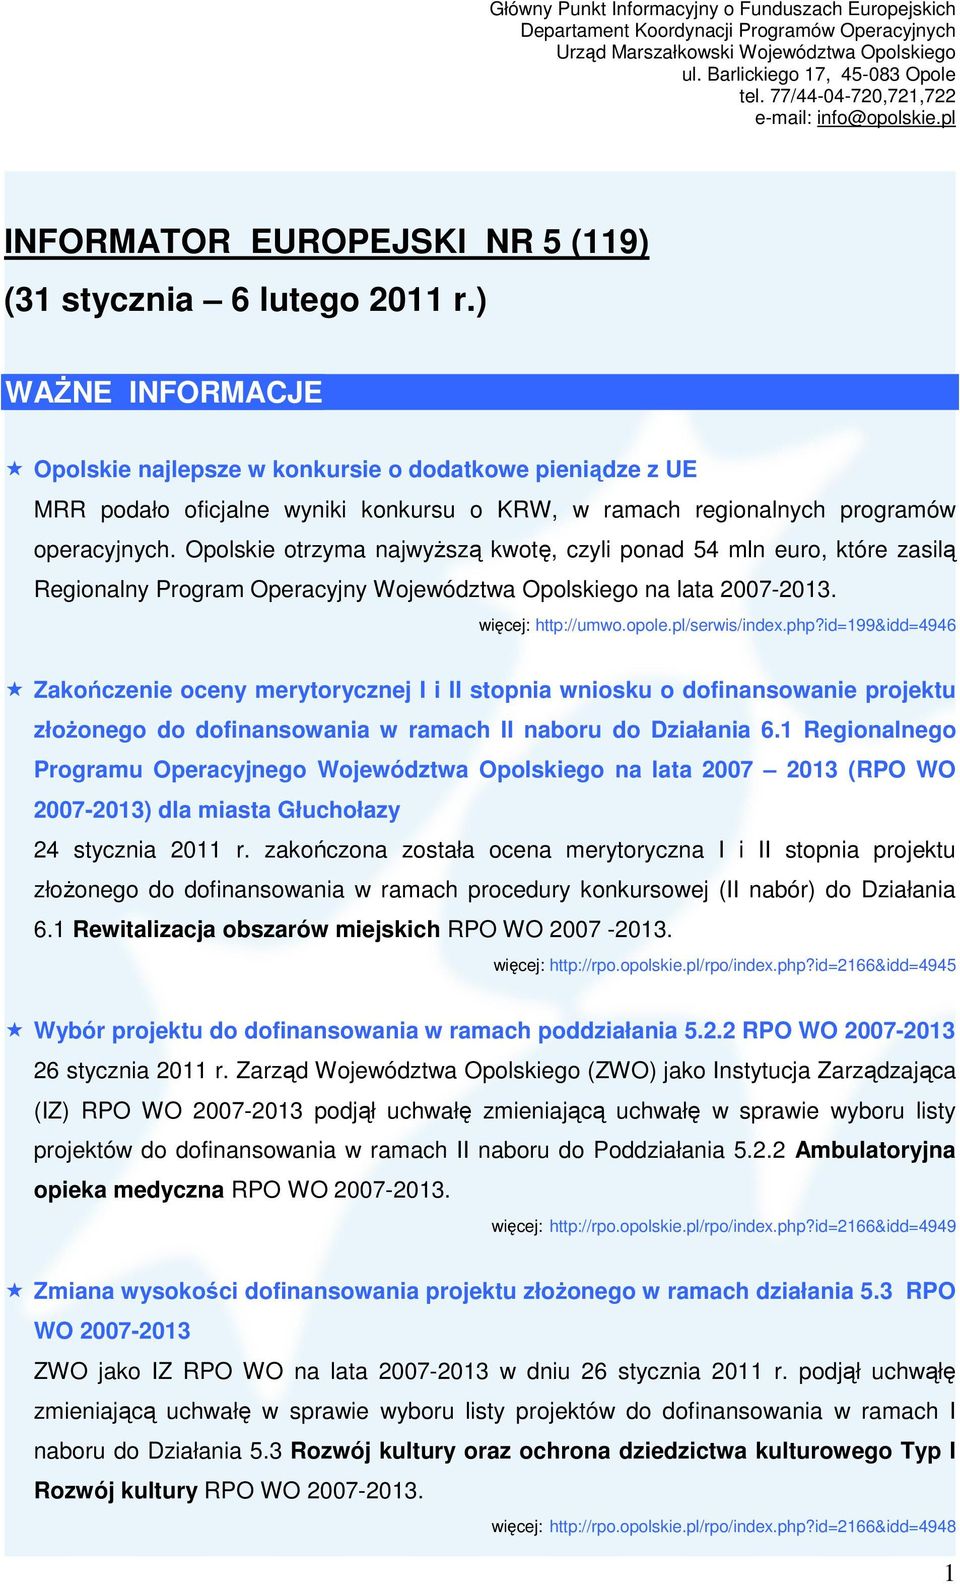 Opolskie otrzyma najwyższą kwotę, czyli ponad 54 mln euro, które zasilą Regionalny Program Operacyjny Województwa Opolskiego na lata 2007-2013. http://umwo.opole.pl/serwis/index.php?